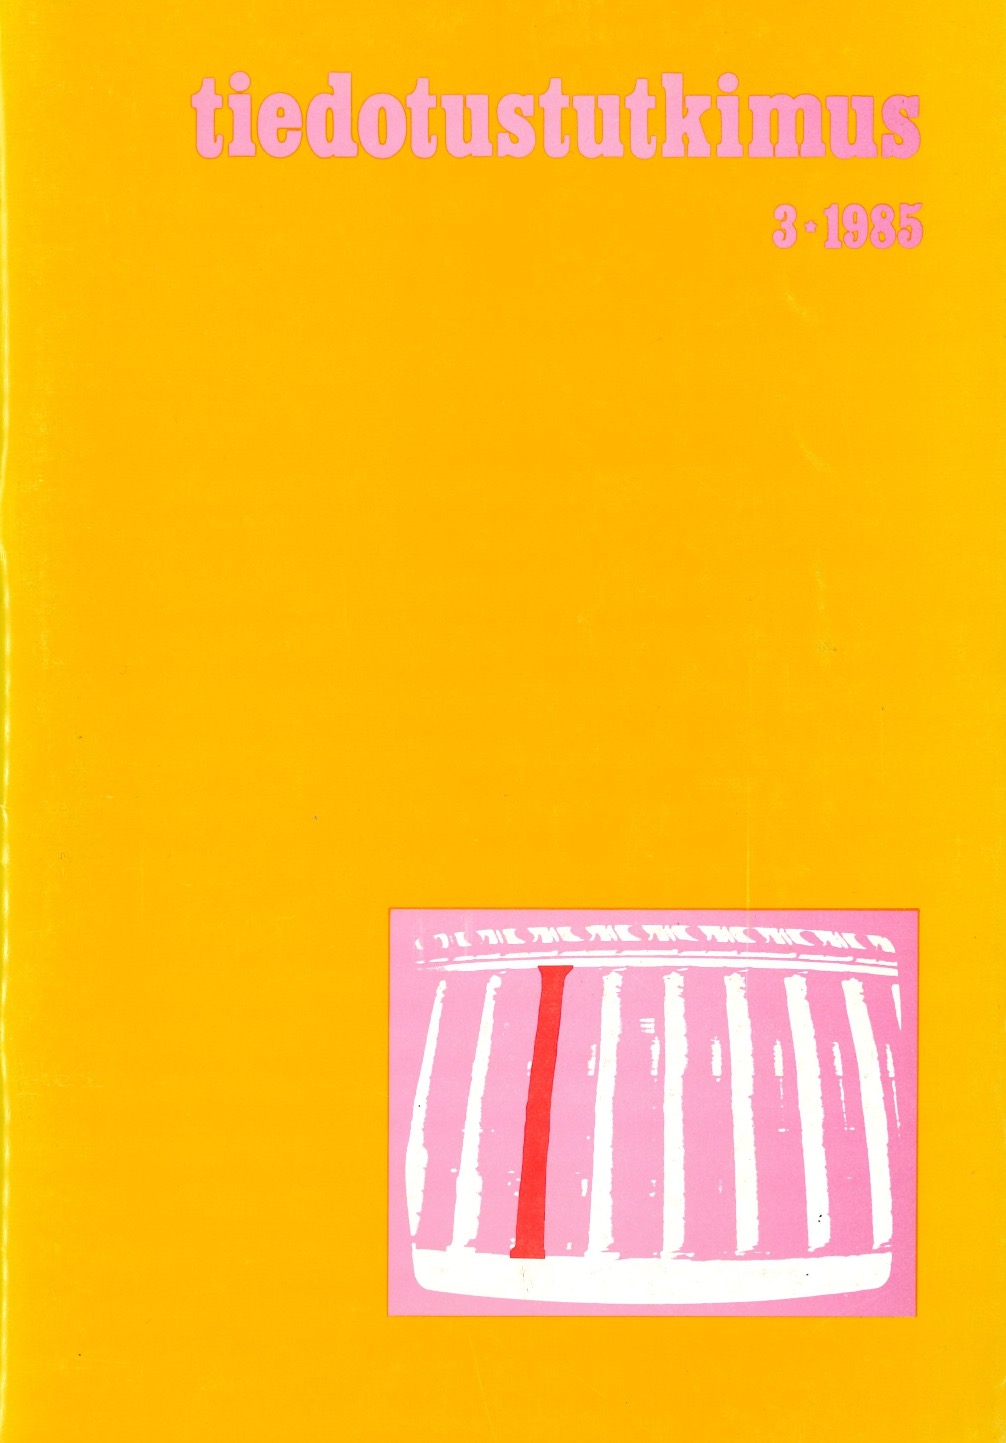 					Näytä Vol 8 Nro 3 (1985)
				